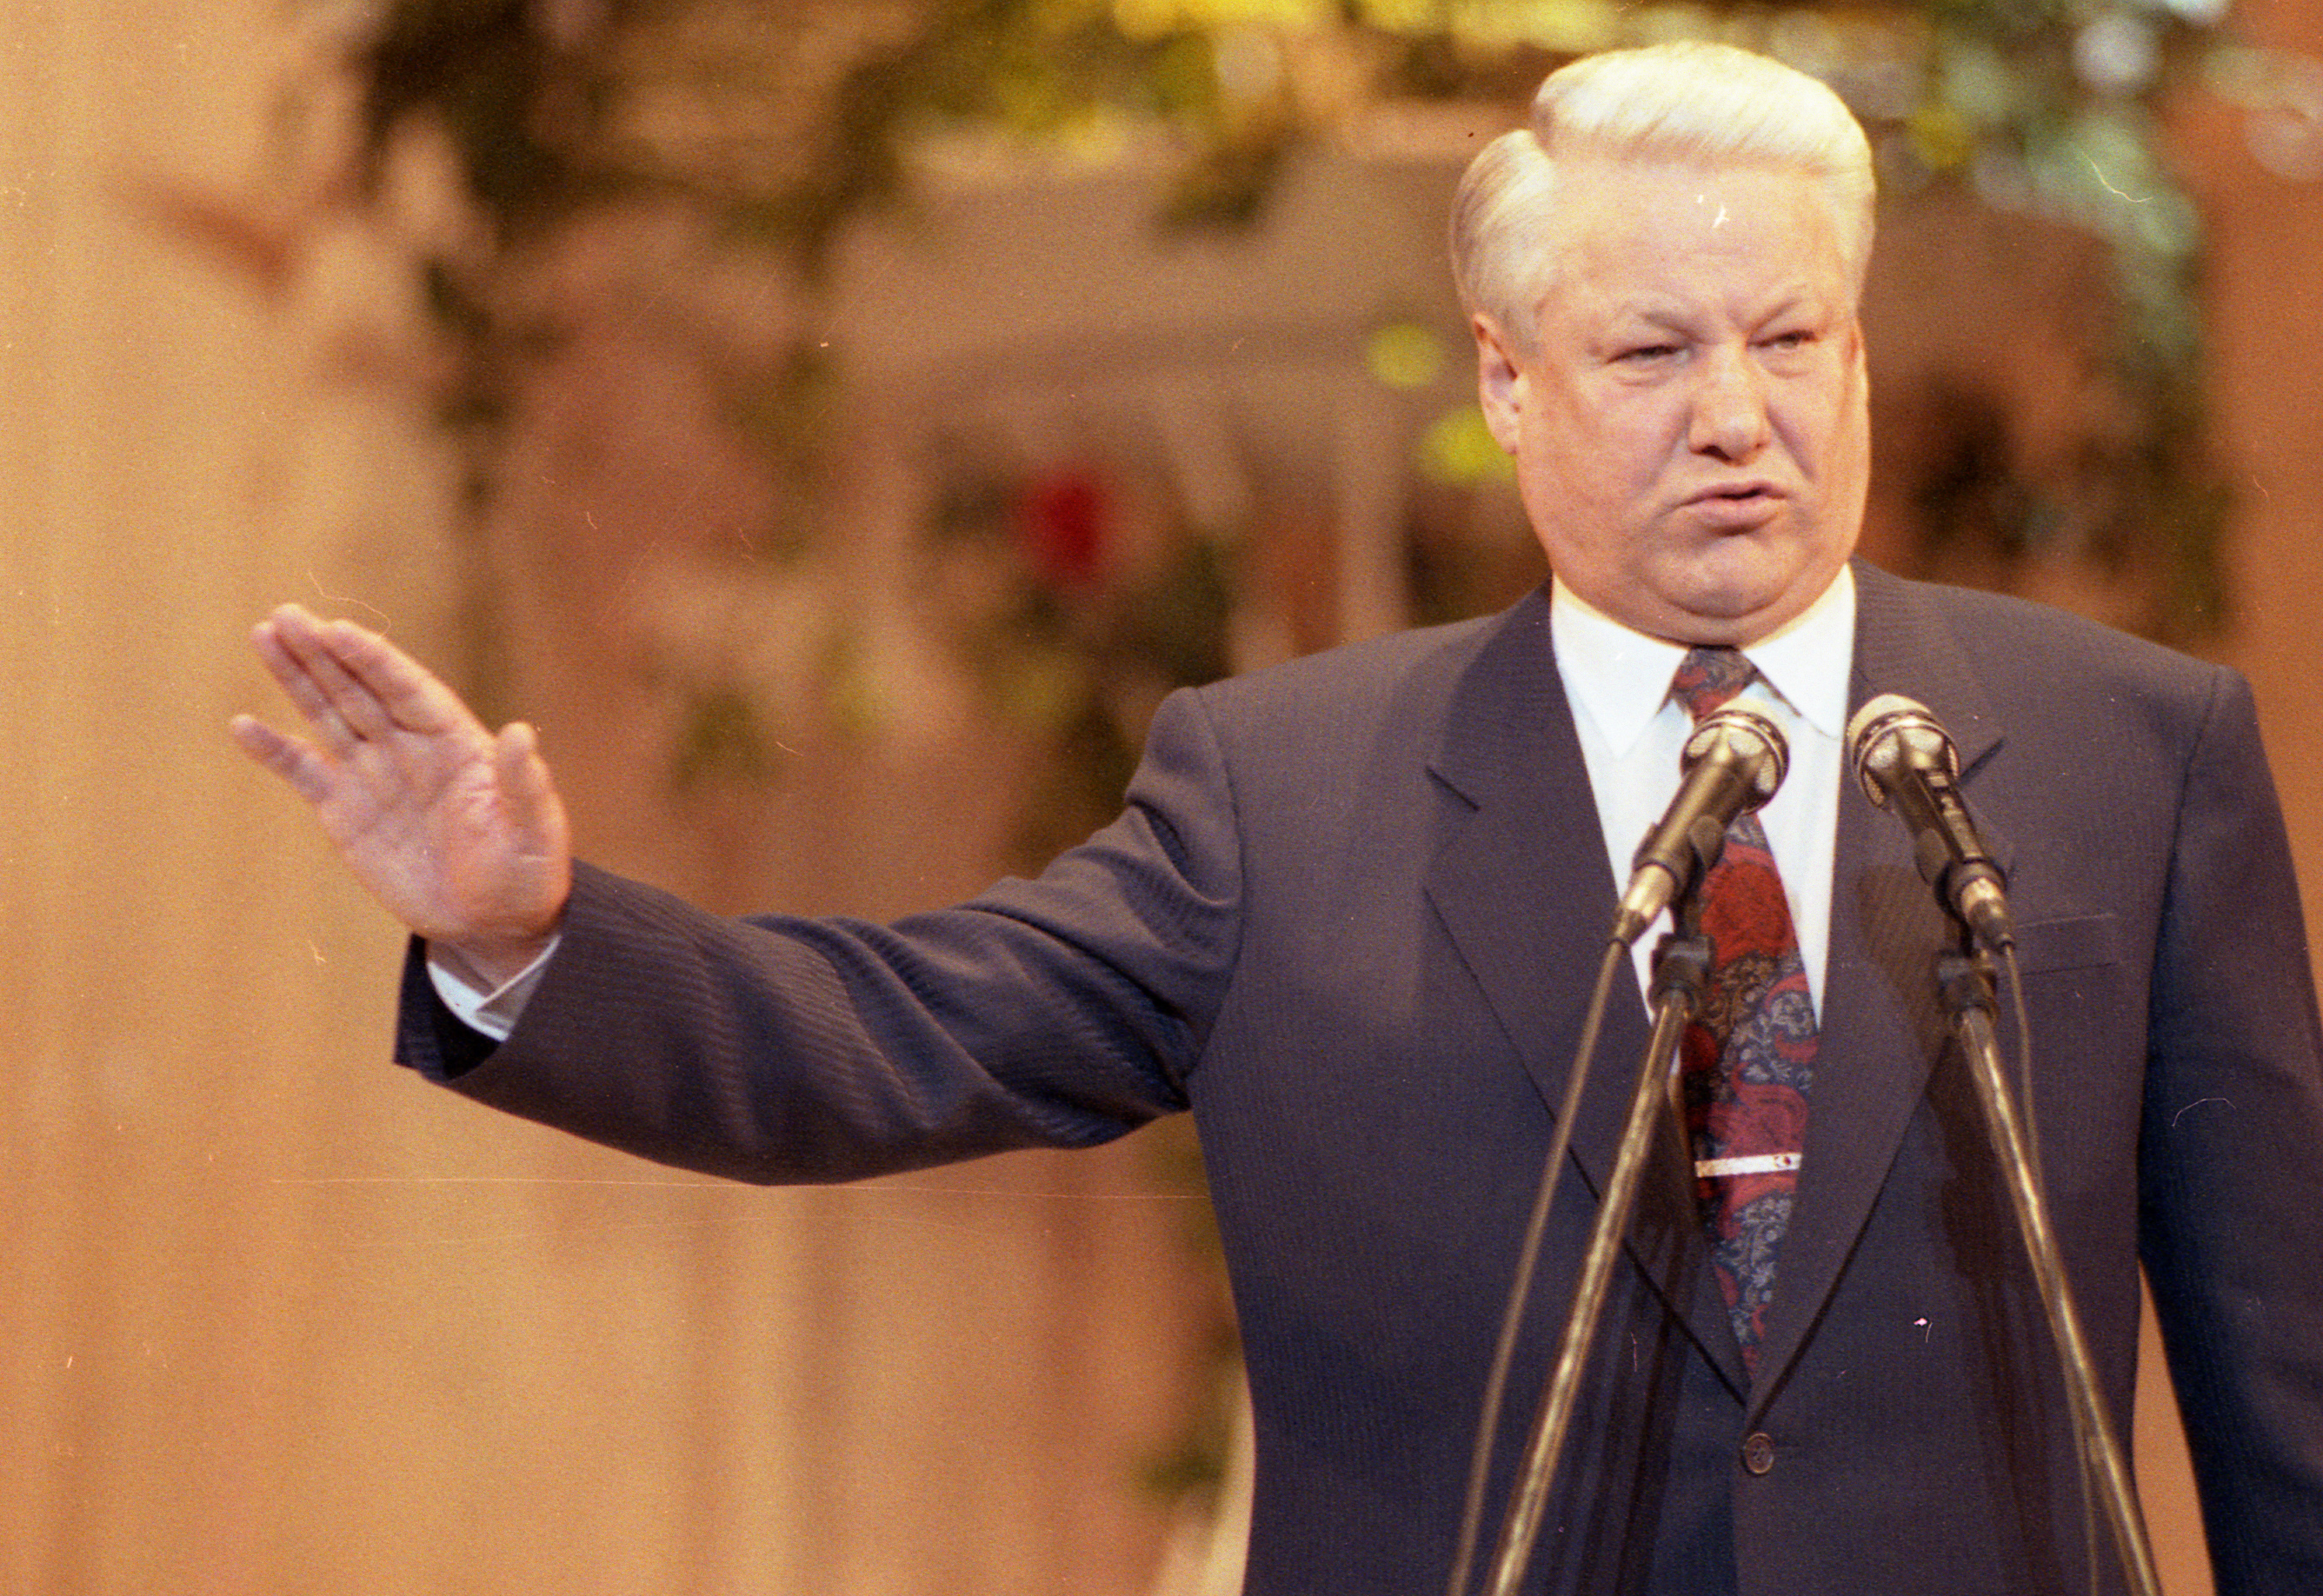 Ельцин б н полномочия